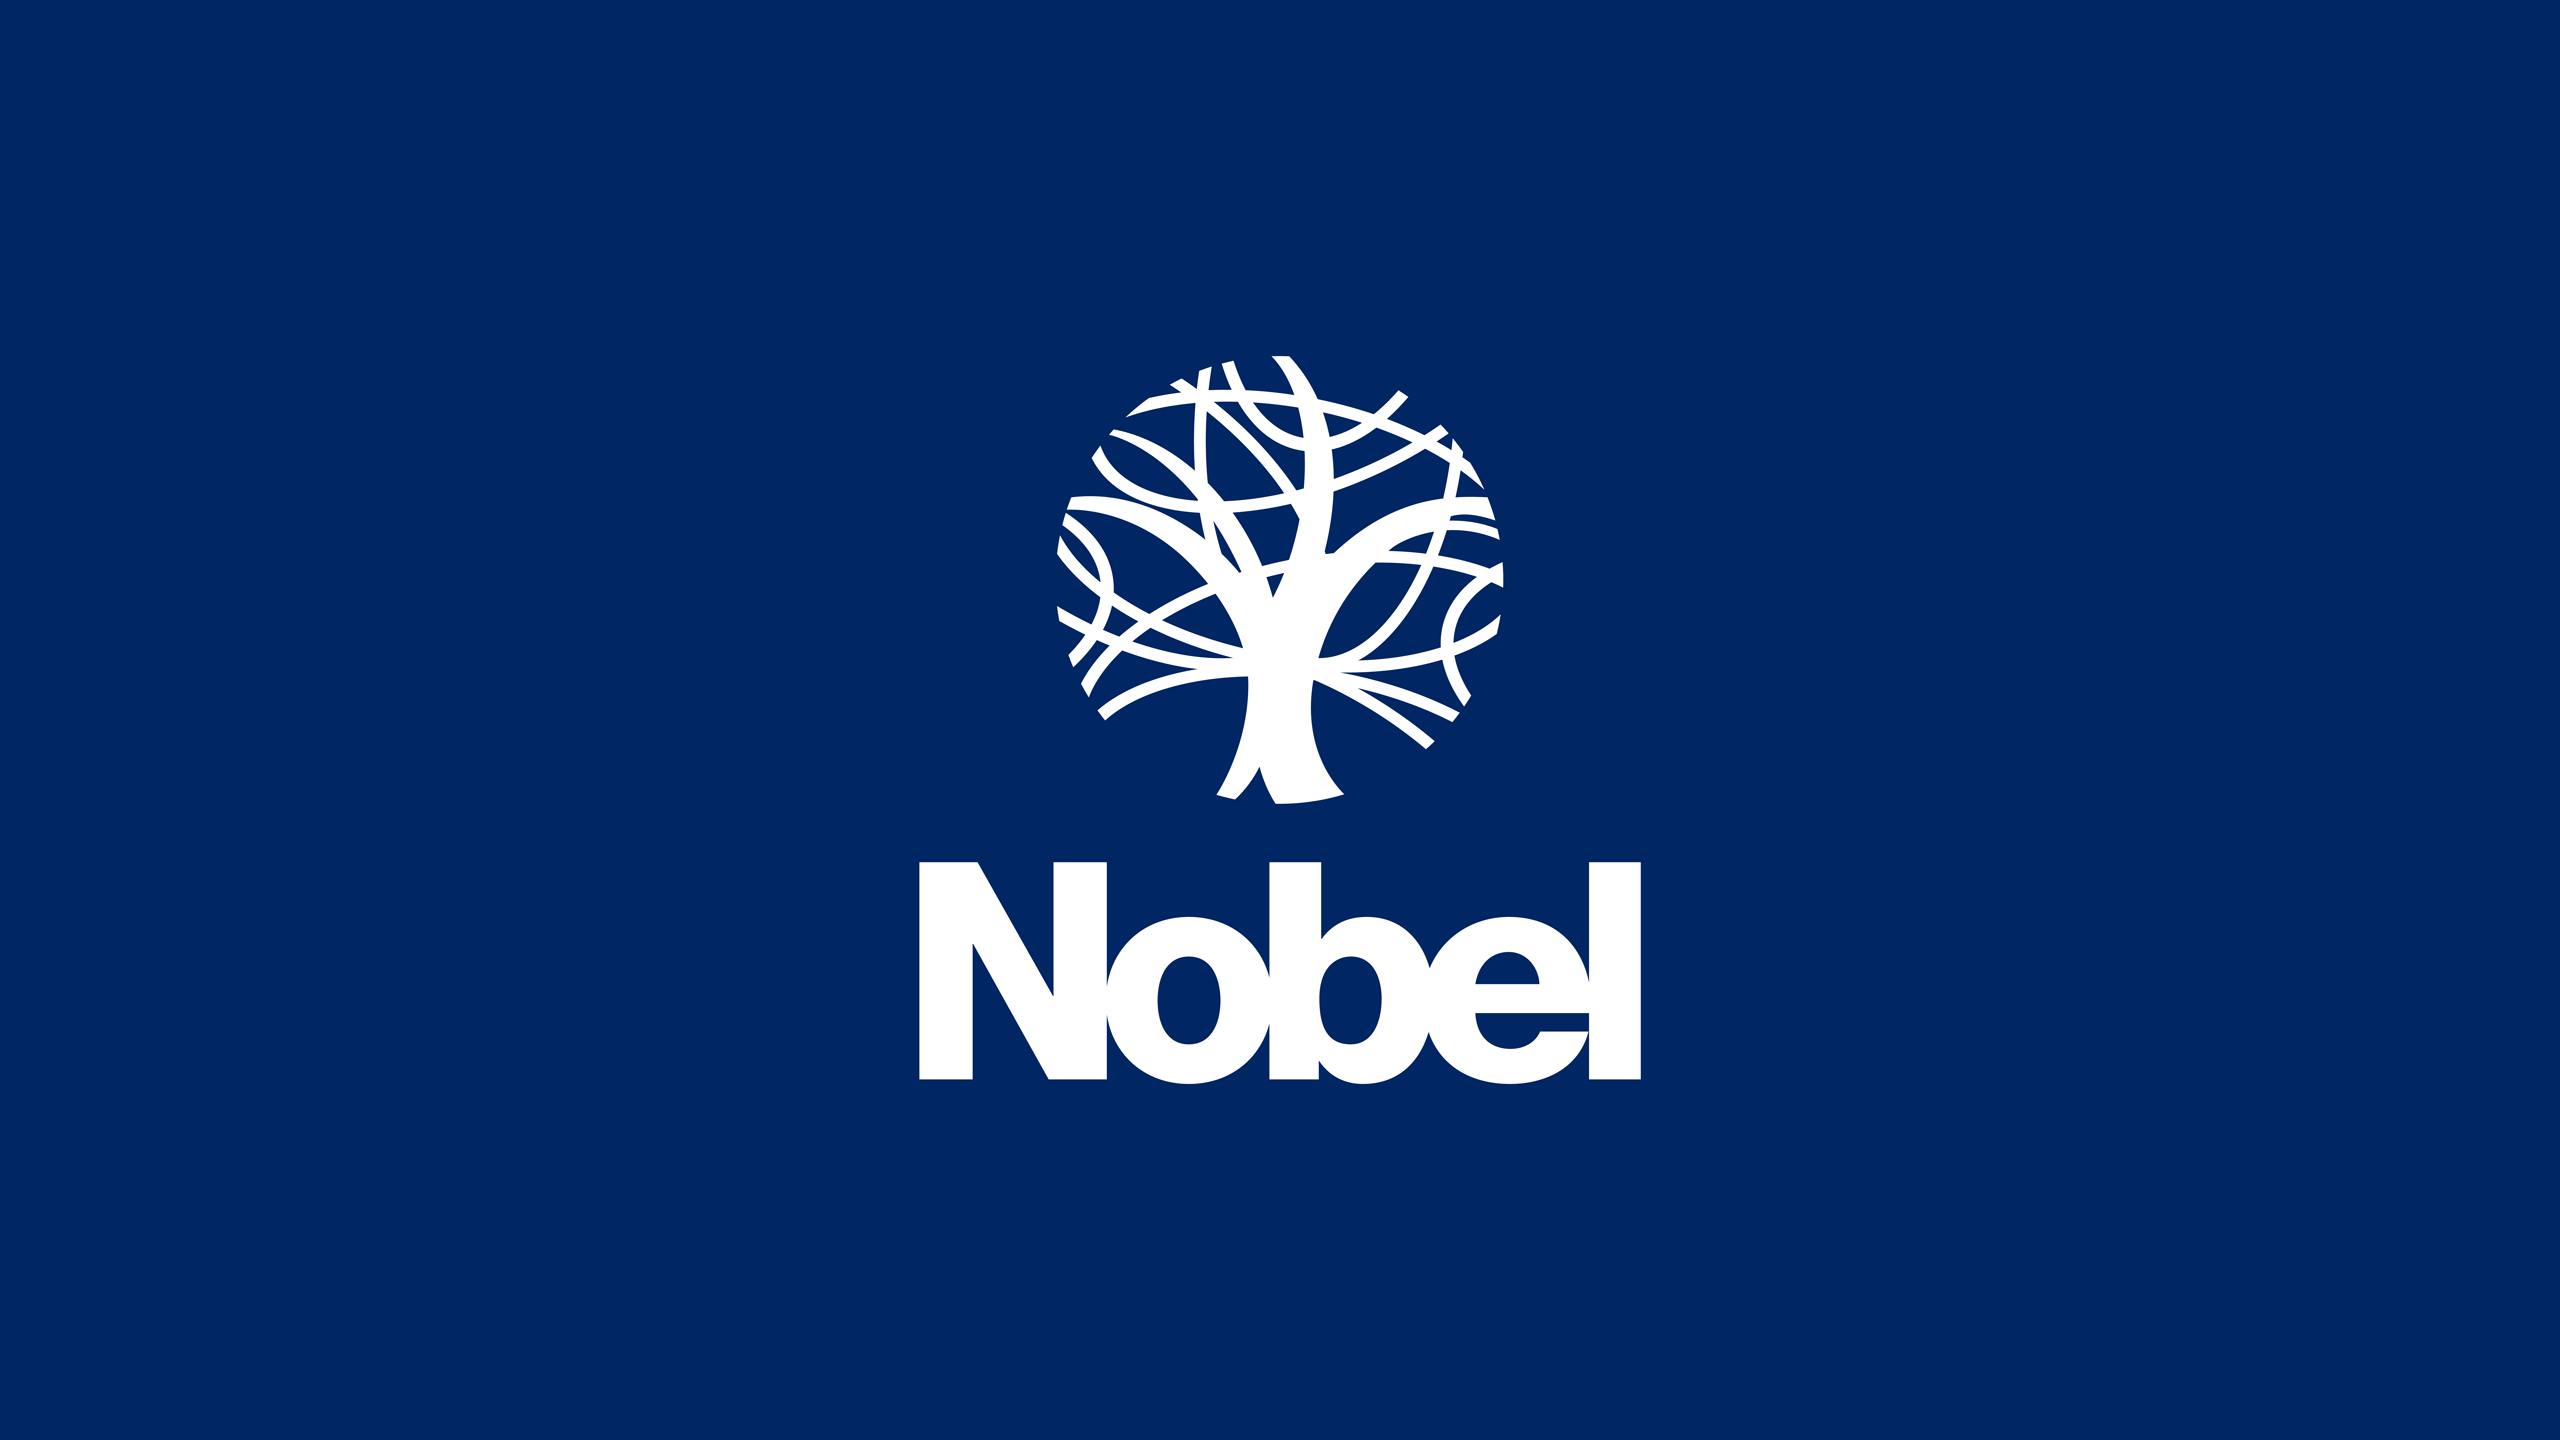 Nobel Logo - School website design. logo design & branding. The Nobel School